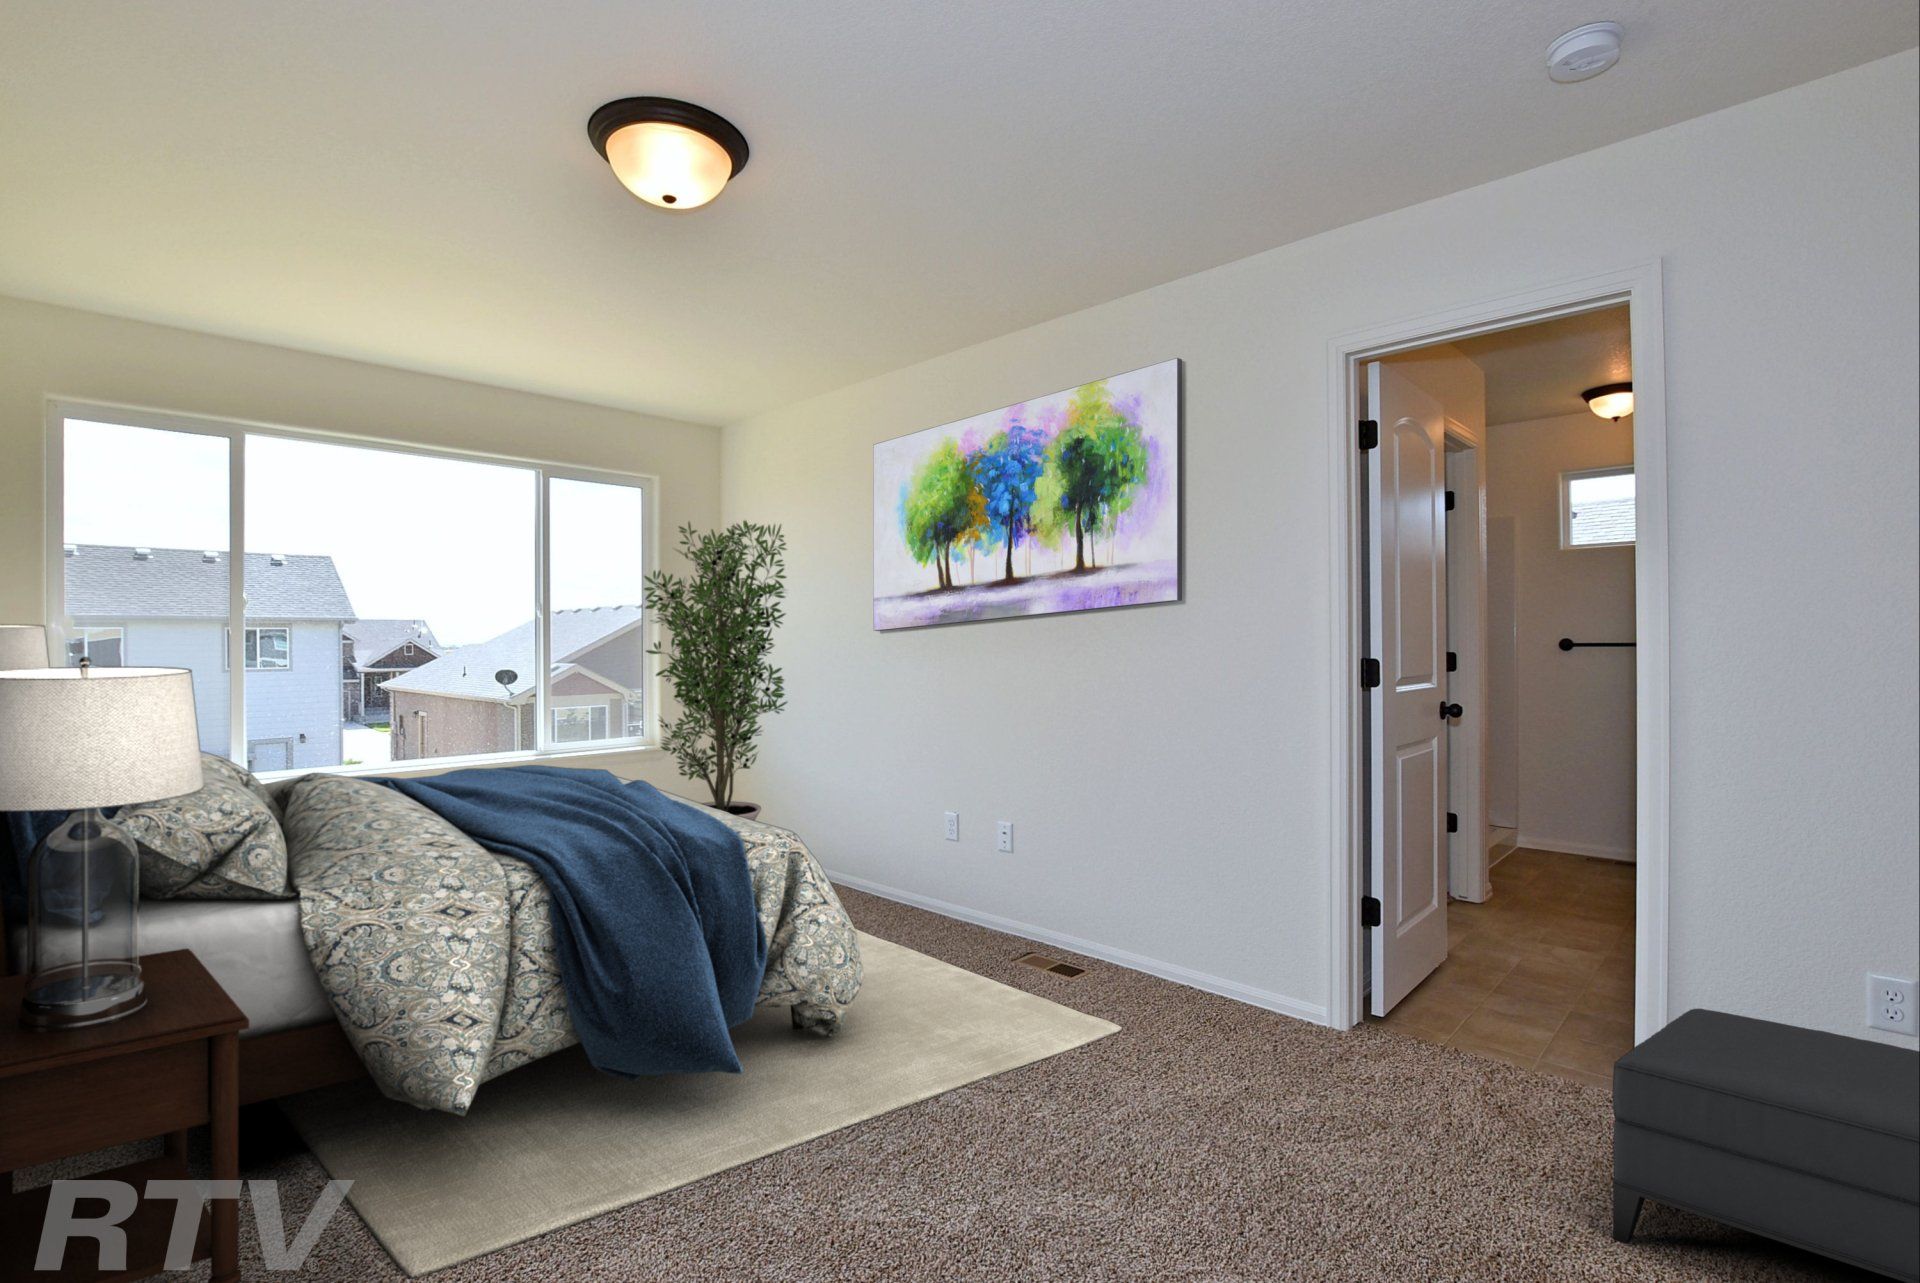 The New Jersey model home bedroom and door